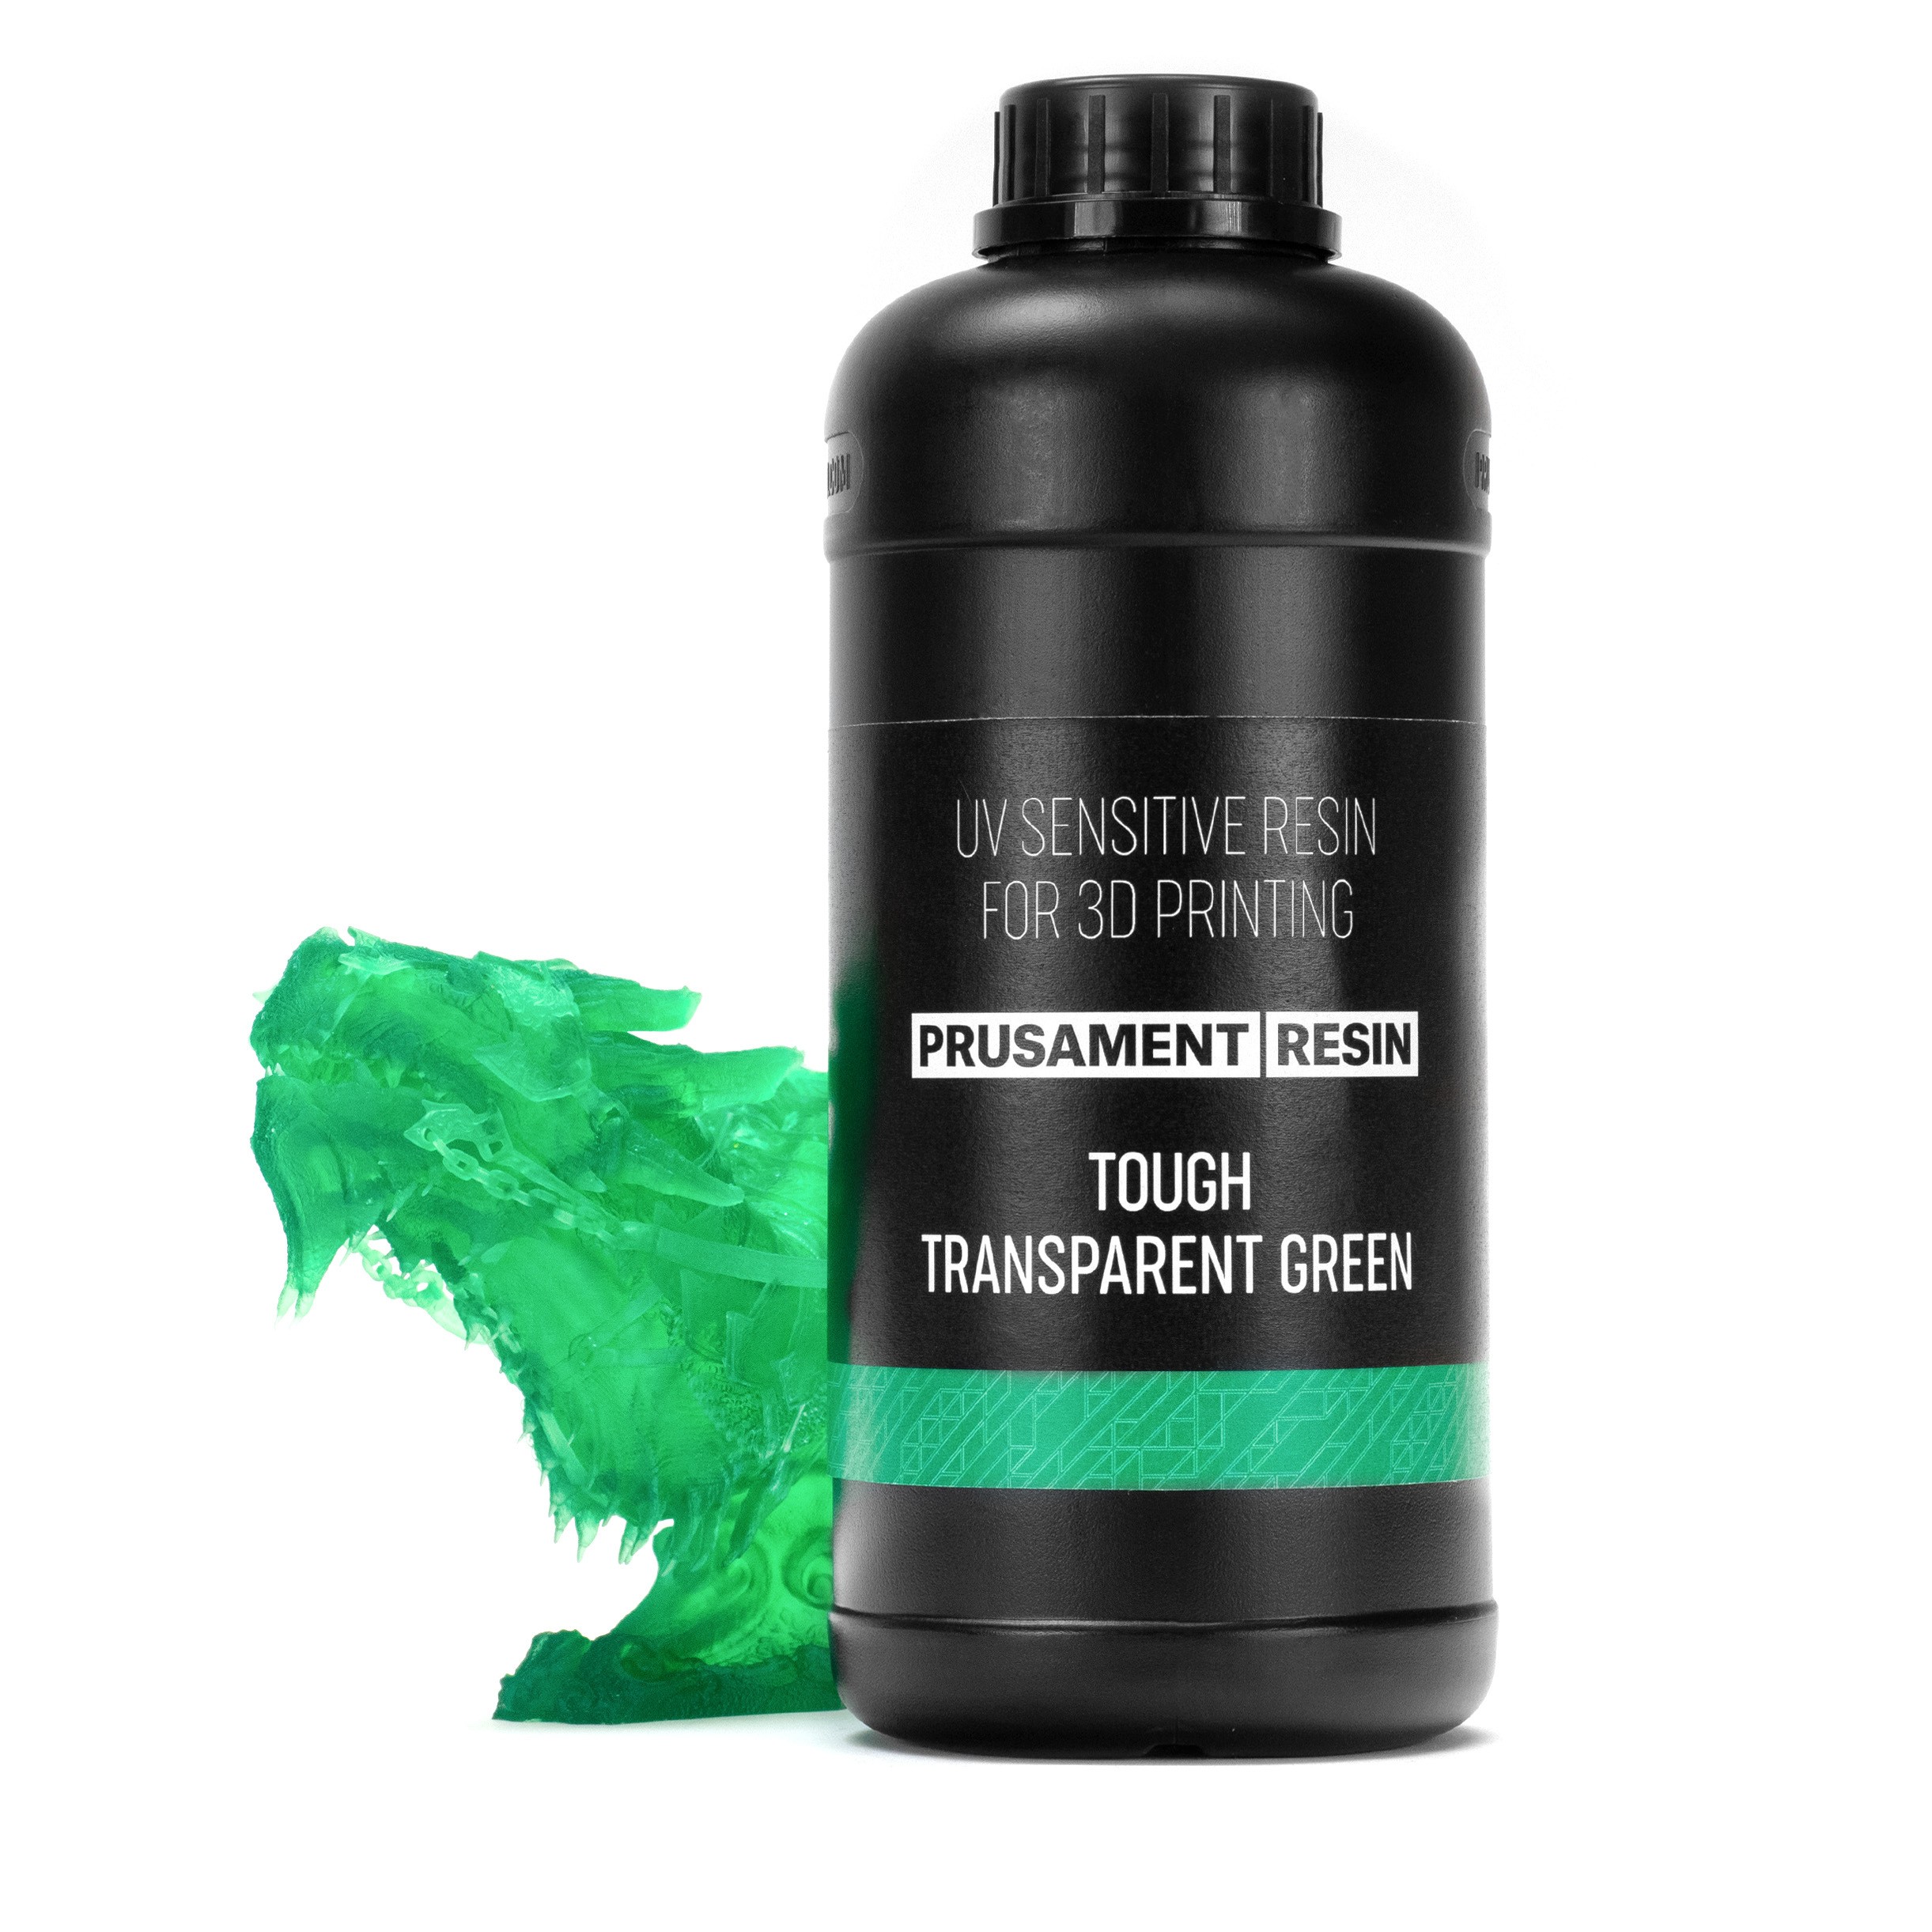 Prusament Resin Tough Transparent Green 1kg  Imprimantes 3D Original Prusa  par Joseph Prusa directement